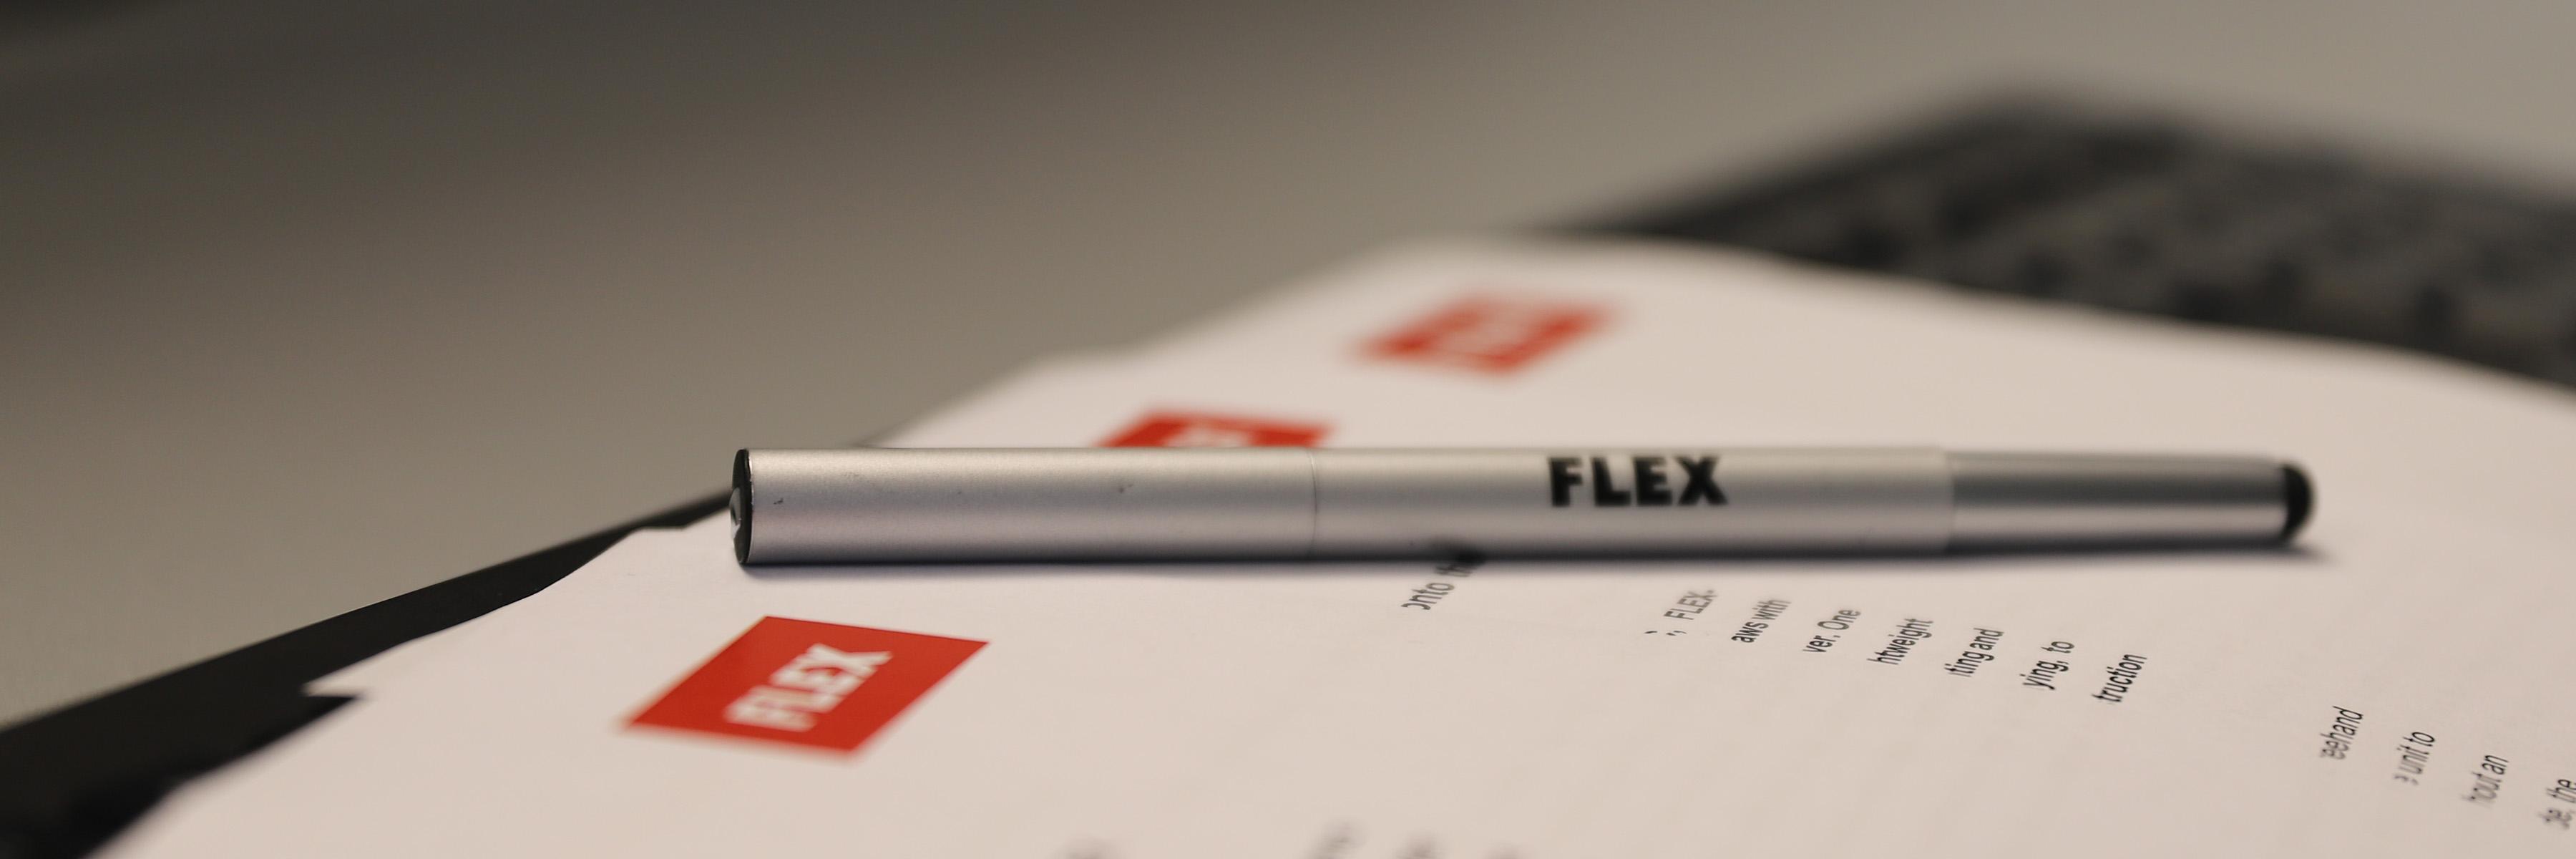 Immagine di testa Pagina stampa di FLEX Power Tools